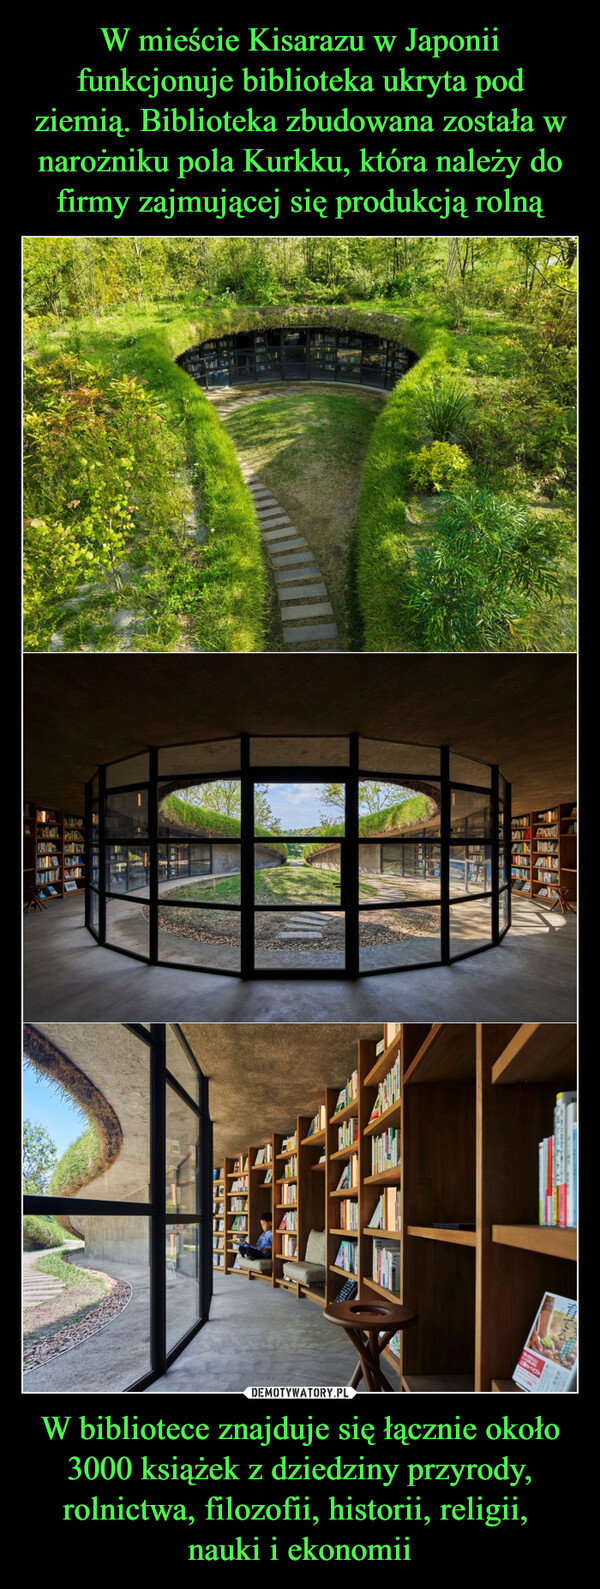 W mieście Kisarazu w Japonii funkcjonuje biblioteka ukryta pod ziemią. Biblioteka zbudowana została w narożniku pola Kurkku, która należy do firmy zajmującej się produkcją rolną W bibliotece znajduje się łącznie około 3000 książek z dziedziny przyrody, rolnictwa, filozofii, historii, religii, 
nauki i ekonomii